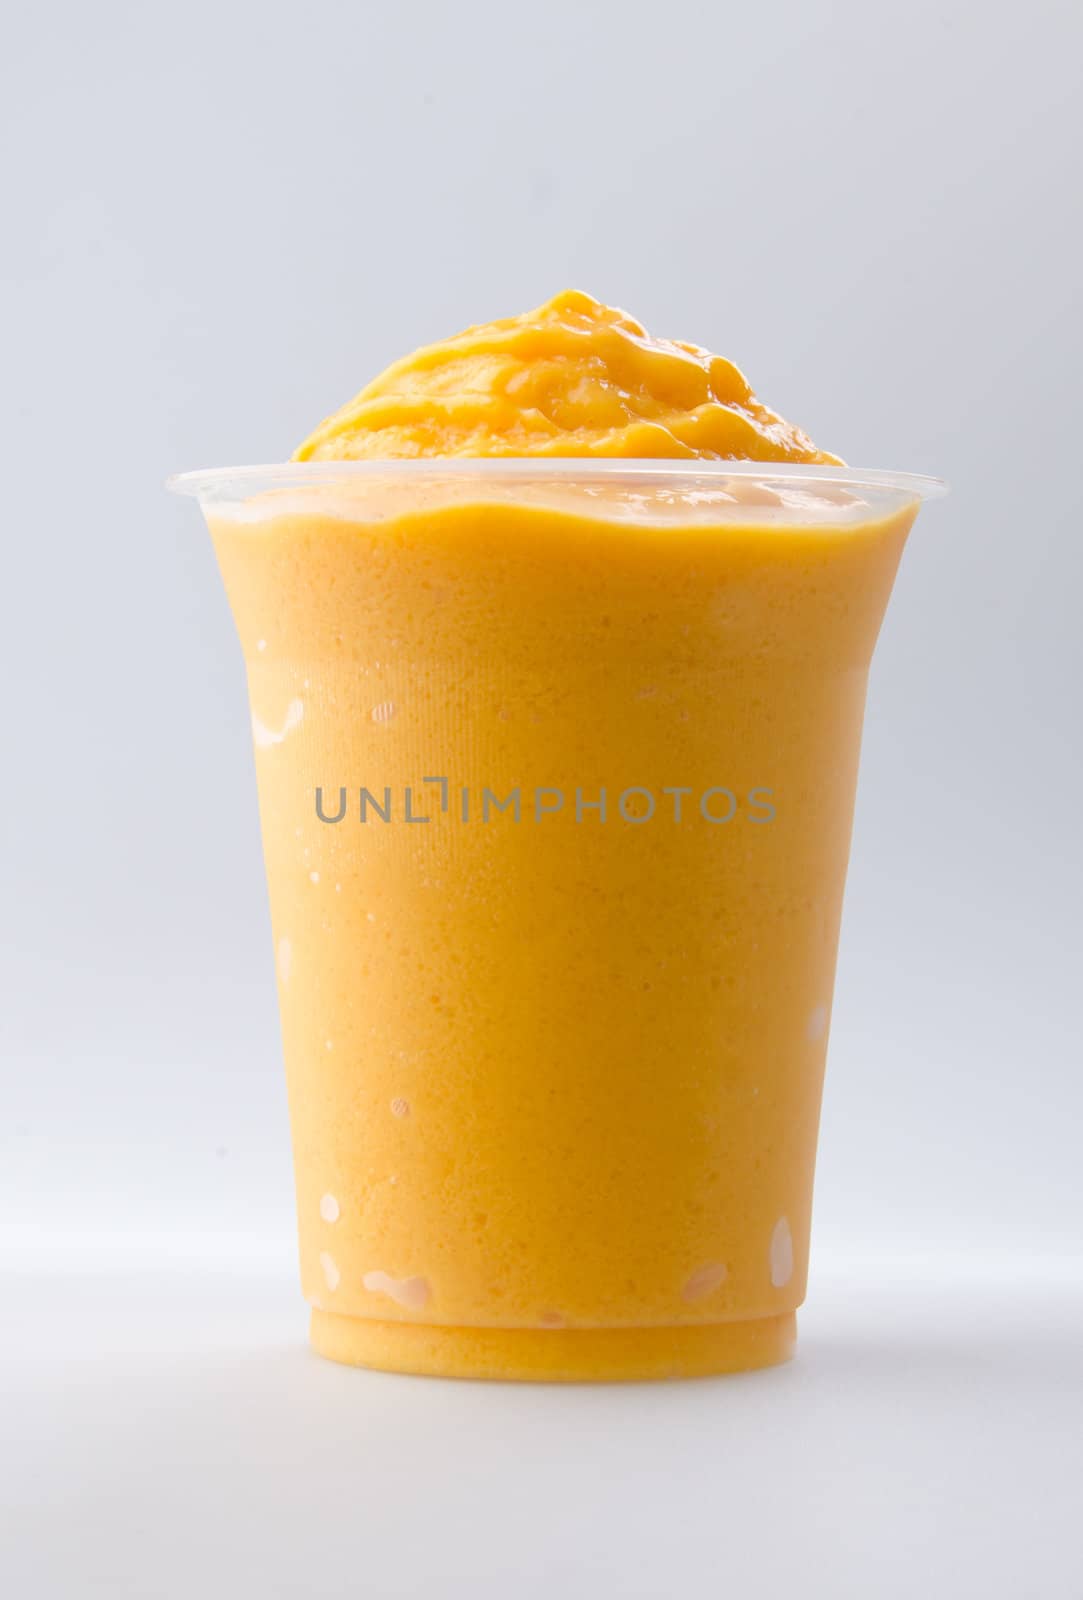 mango yogurt, milk shake isolated on white